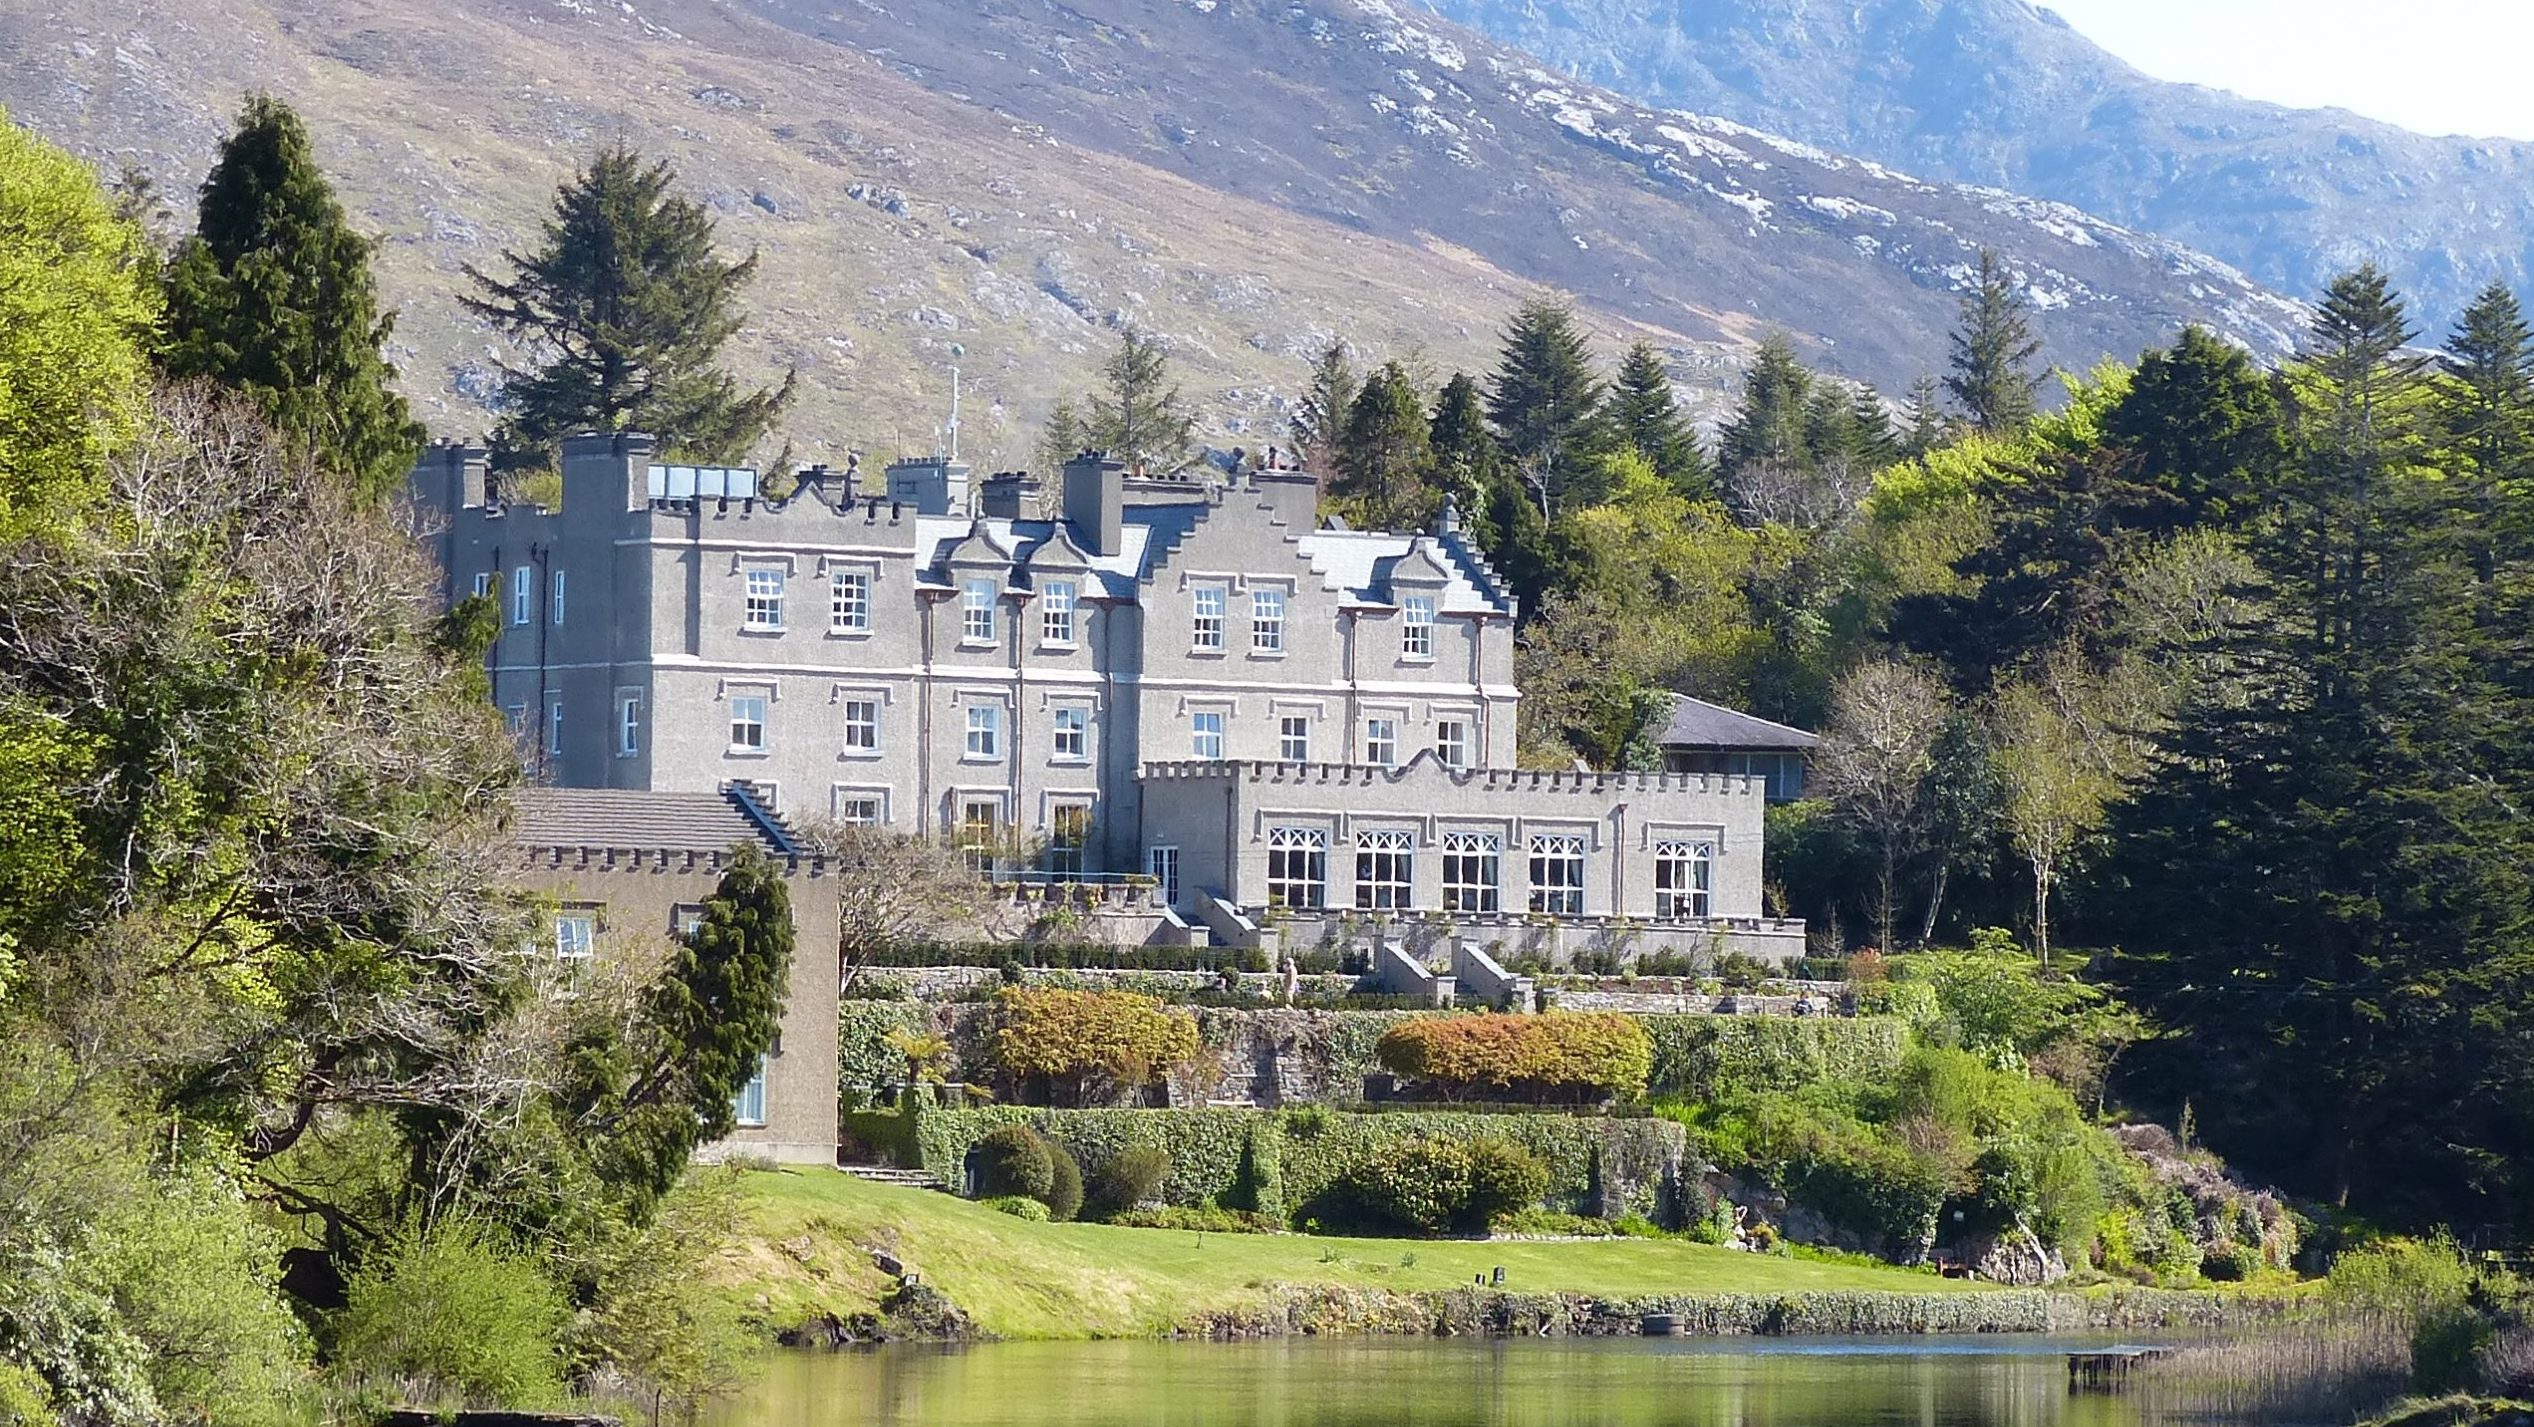 Castles & Legends of Ireland